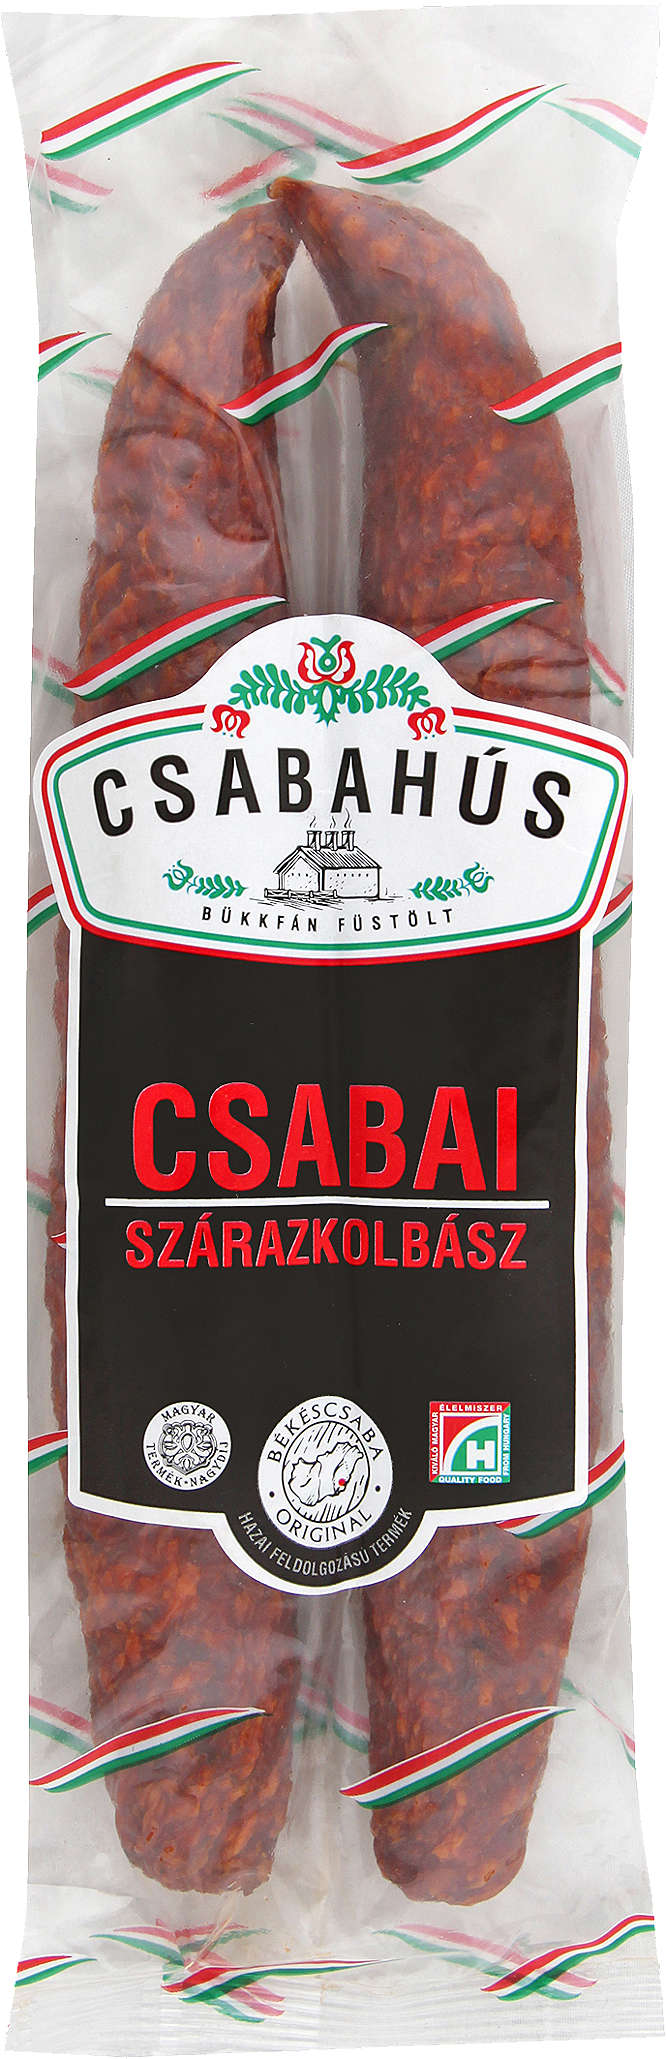 Zobrazenie výrobku Csabahús Čabajská klobása